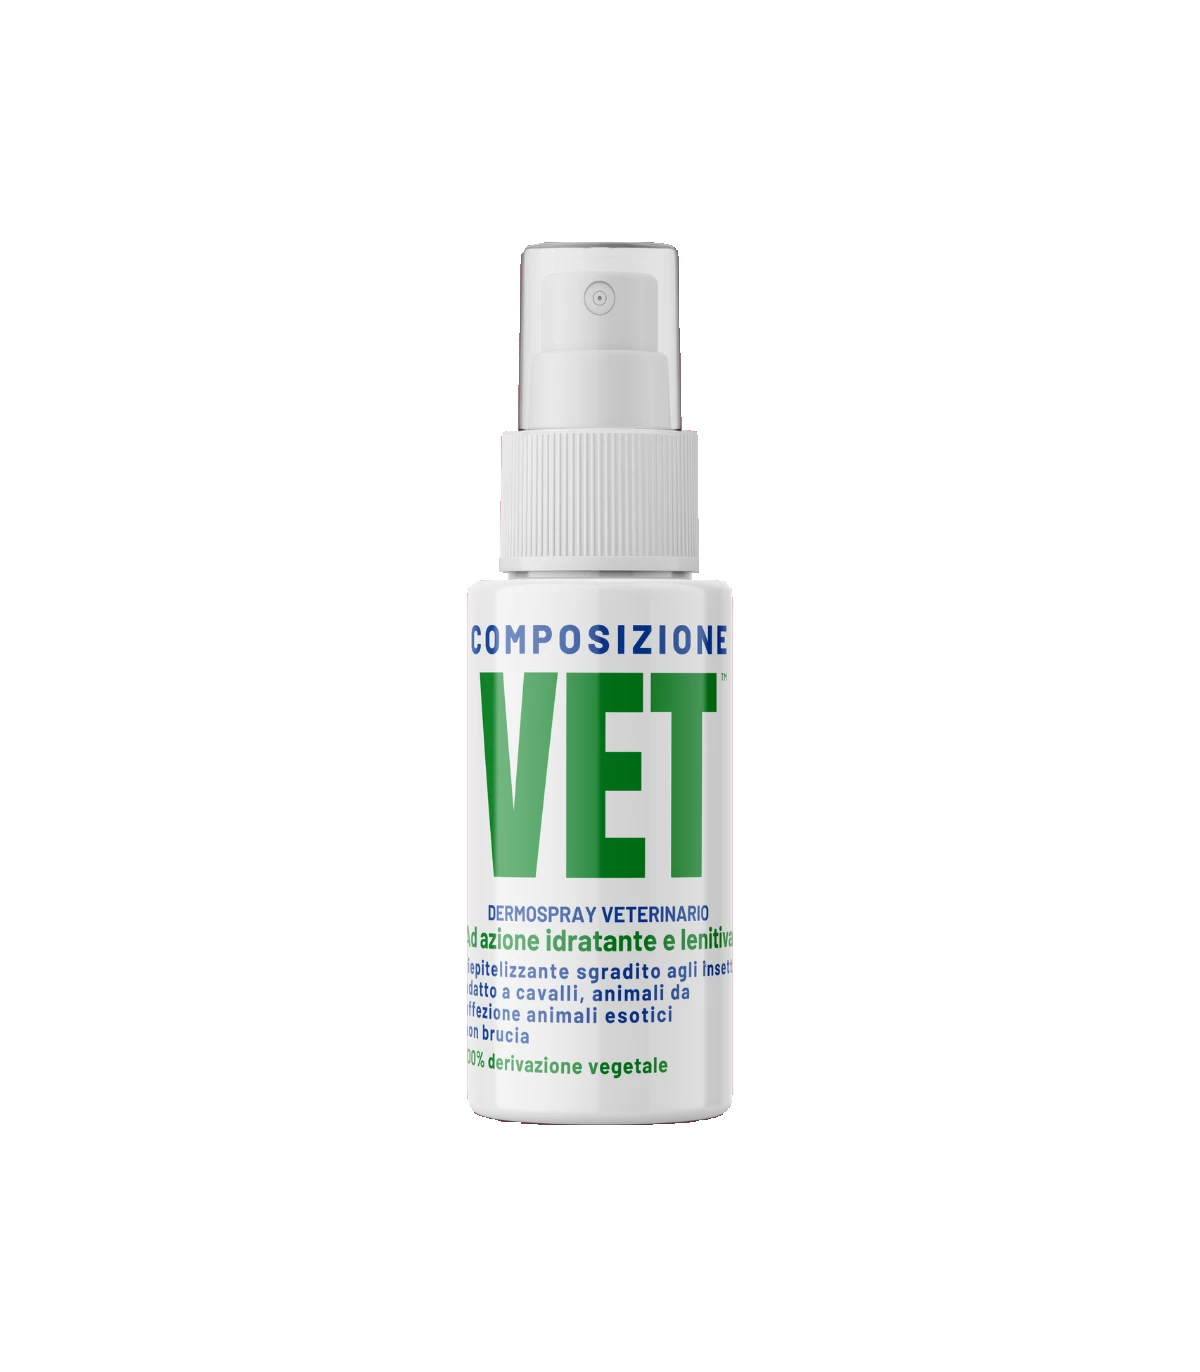 Composizione vet spray da 40 ml per dermatiti su cani, gatti e cavalli